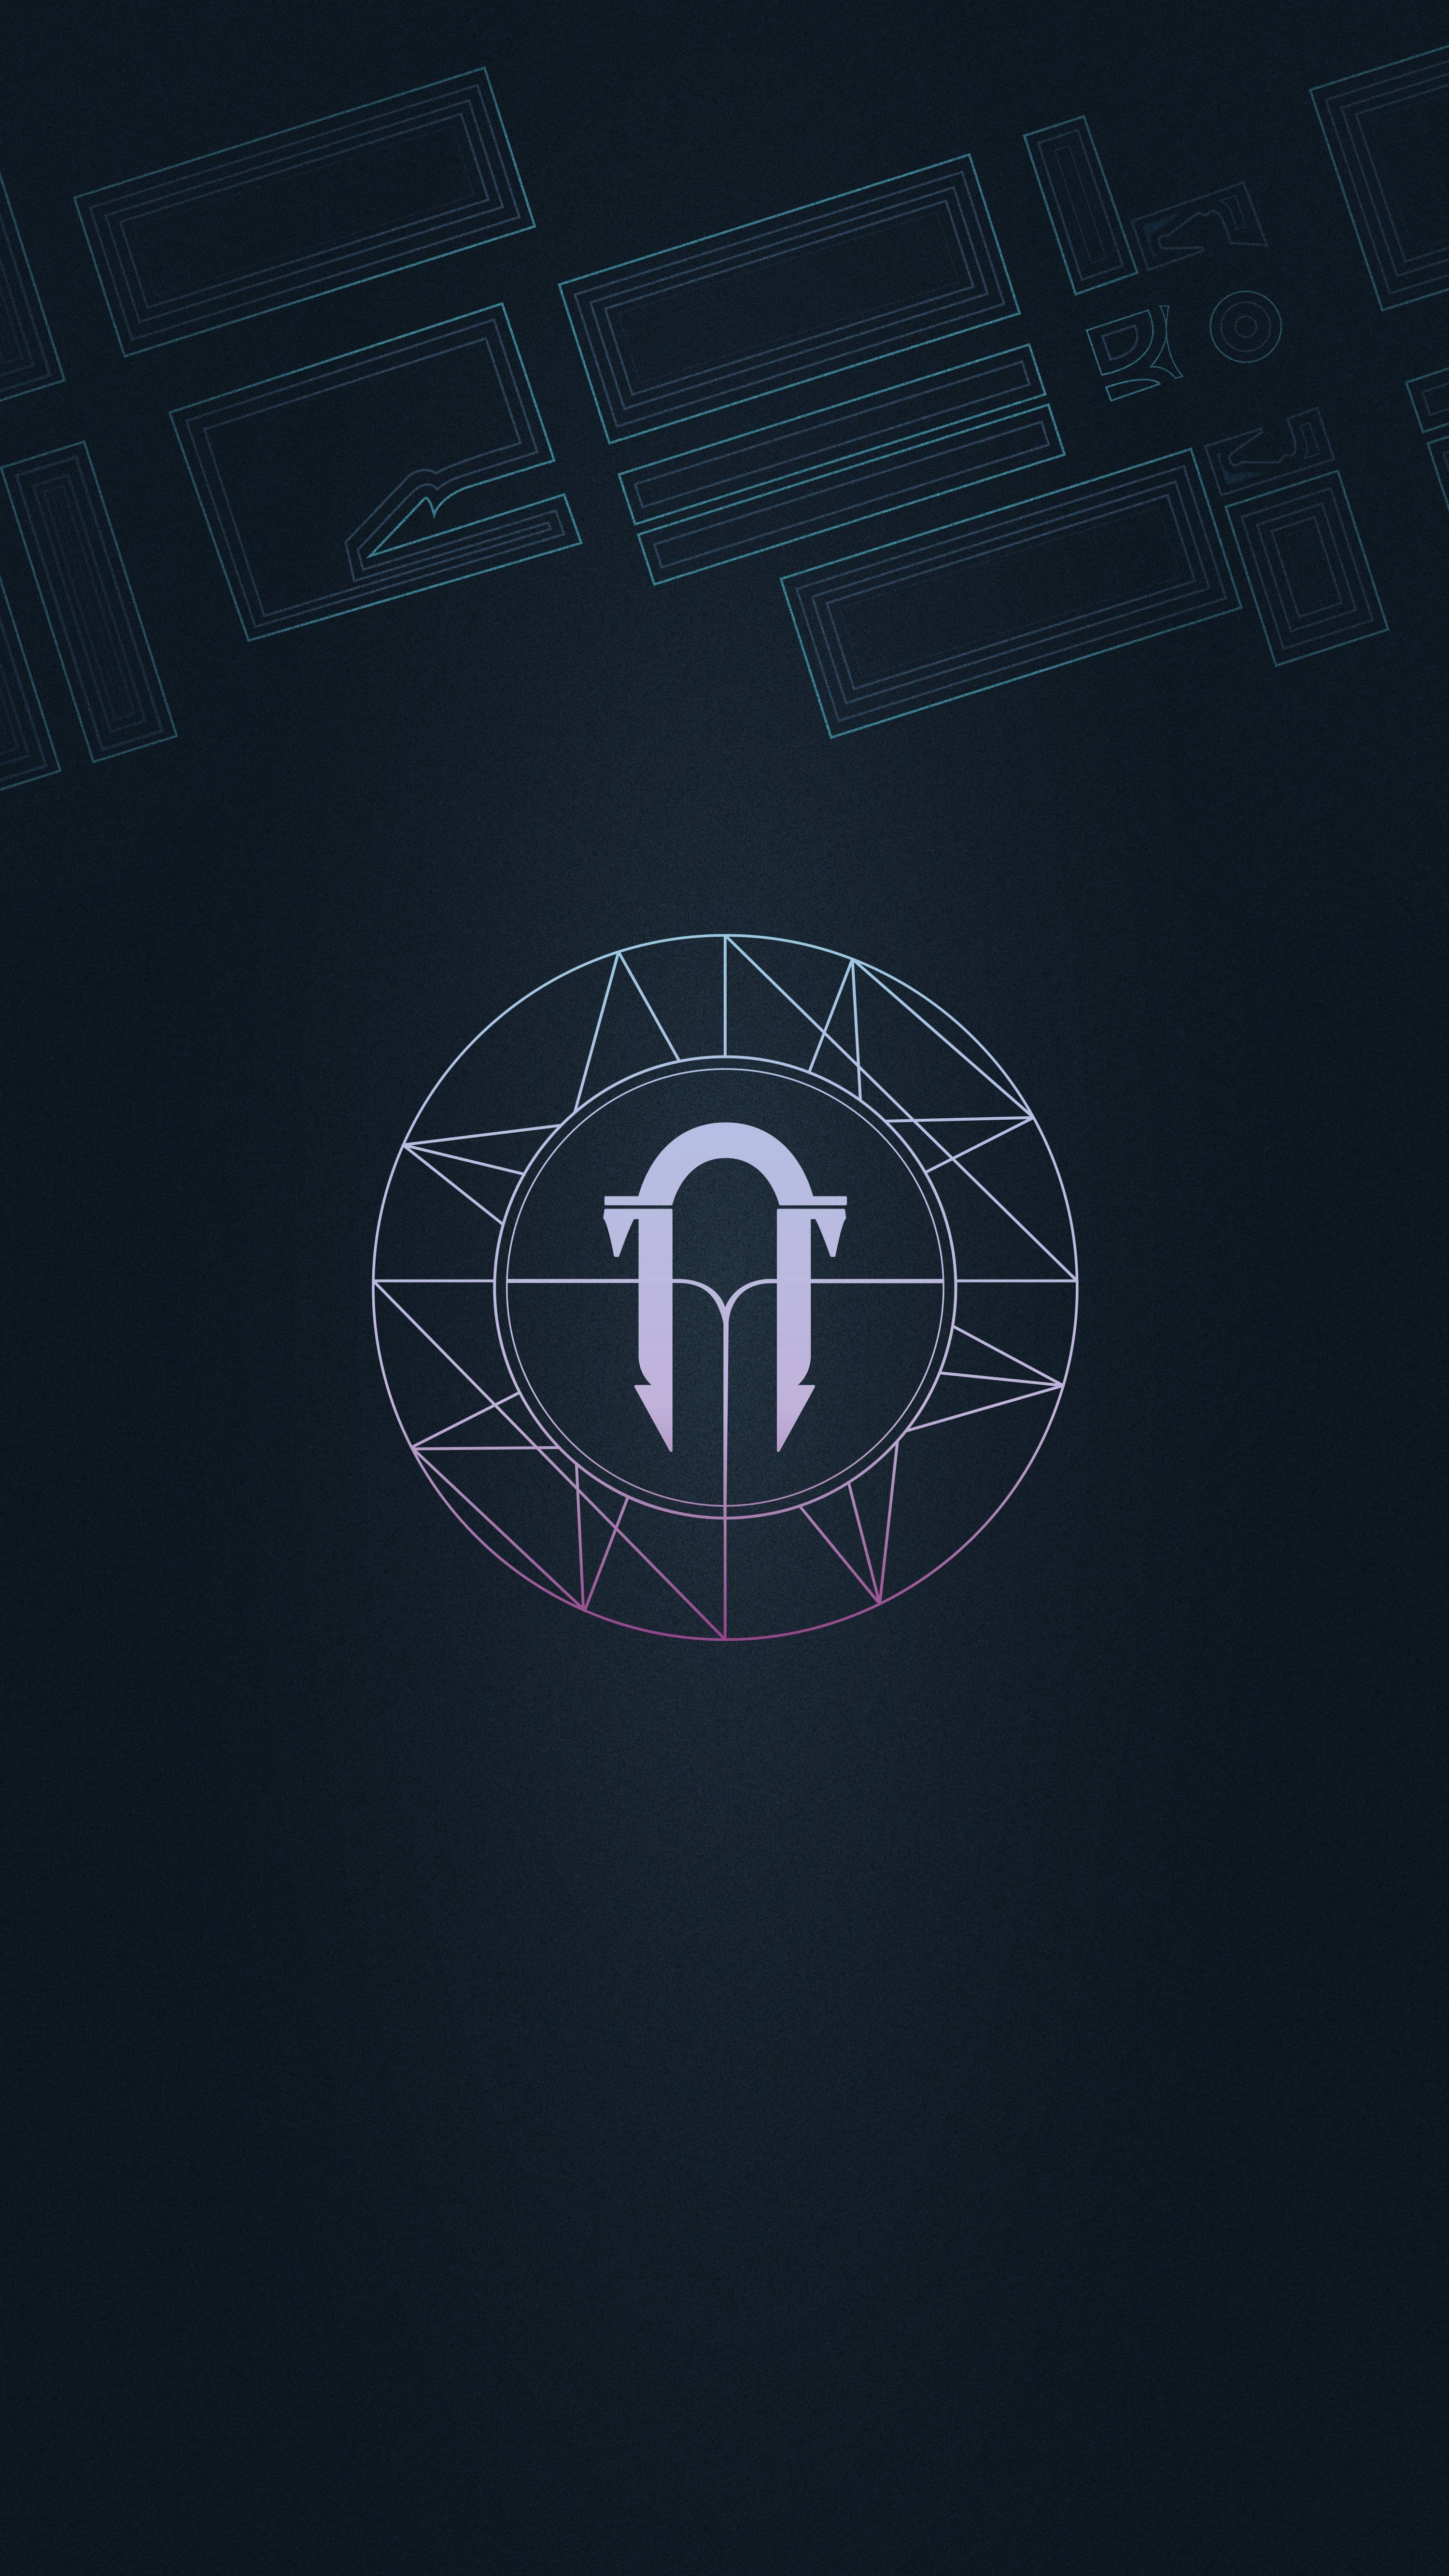 Destiny Emblem Wallpapers on Behance